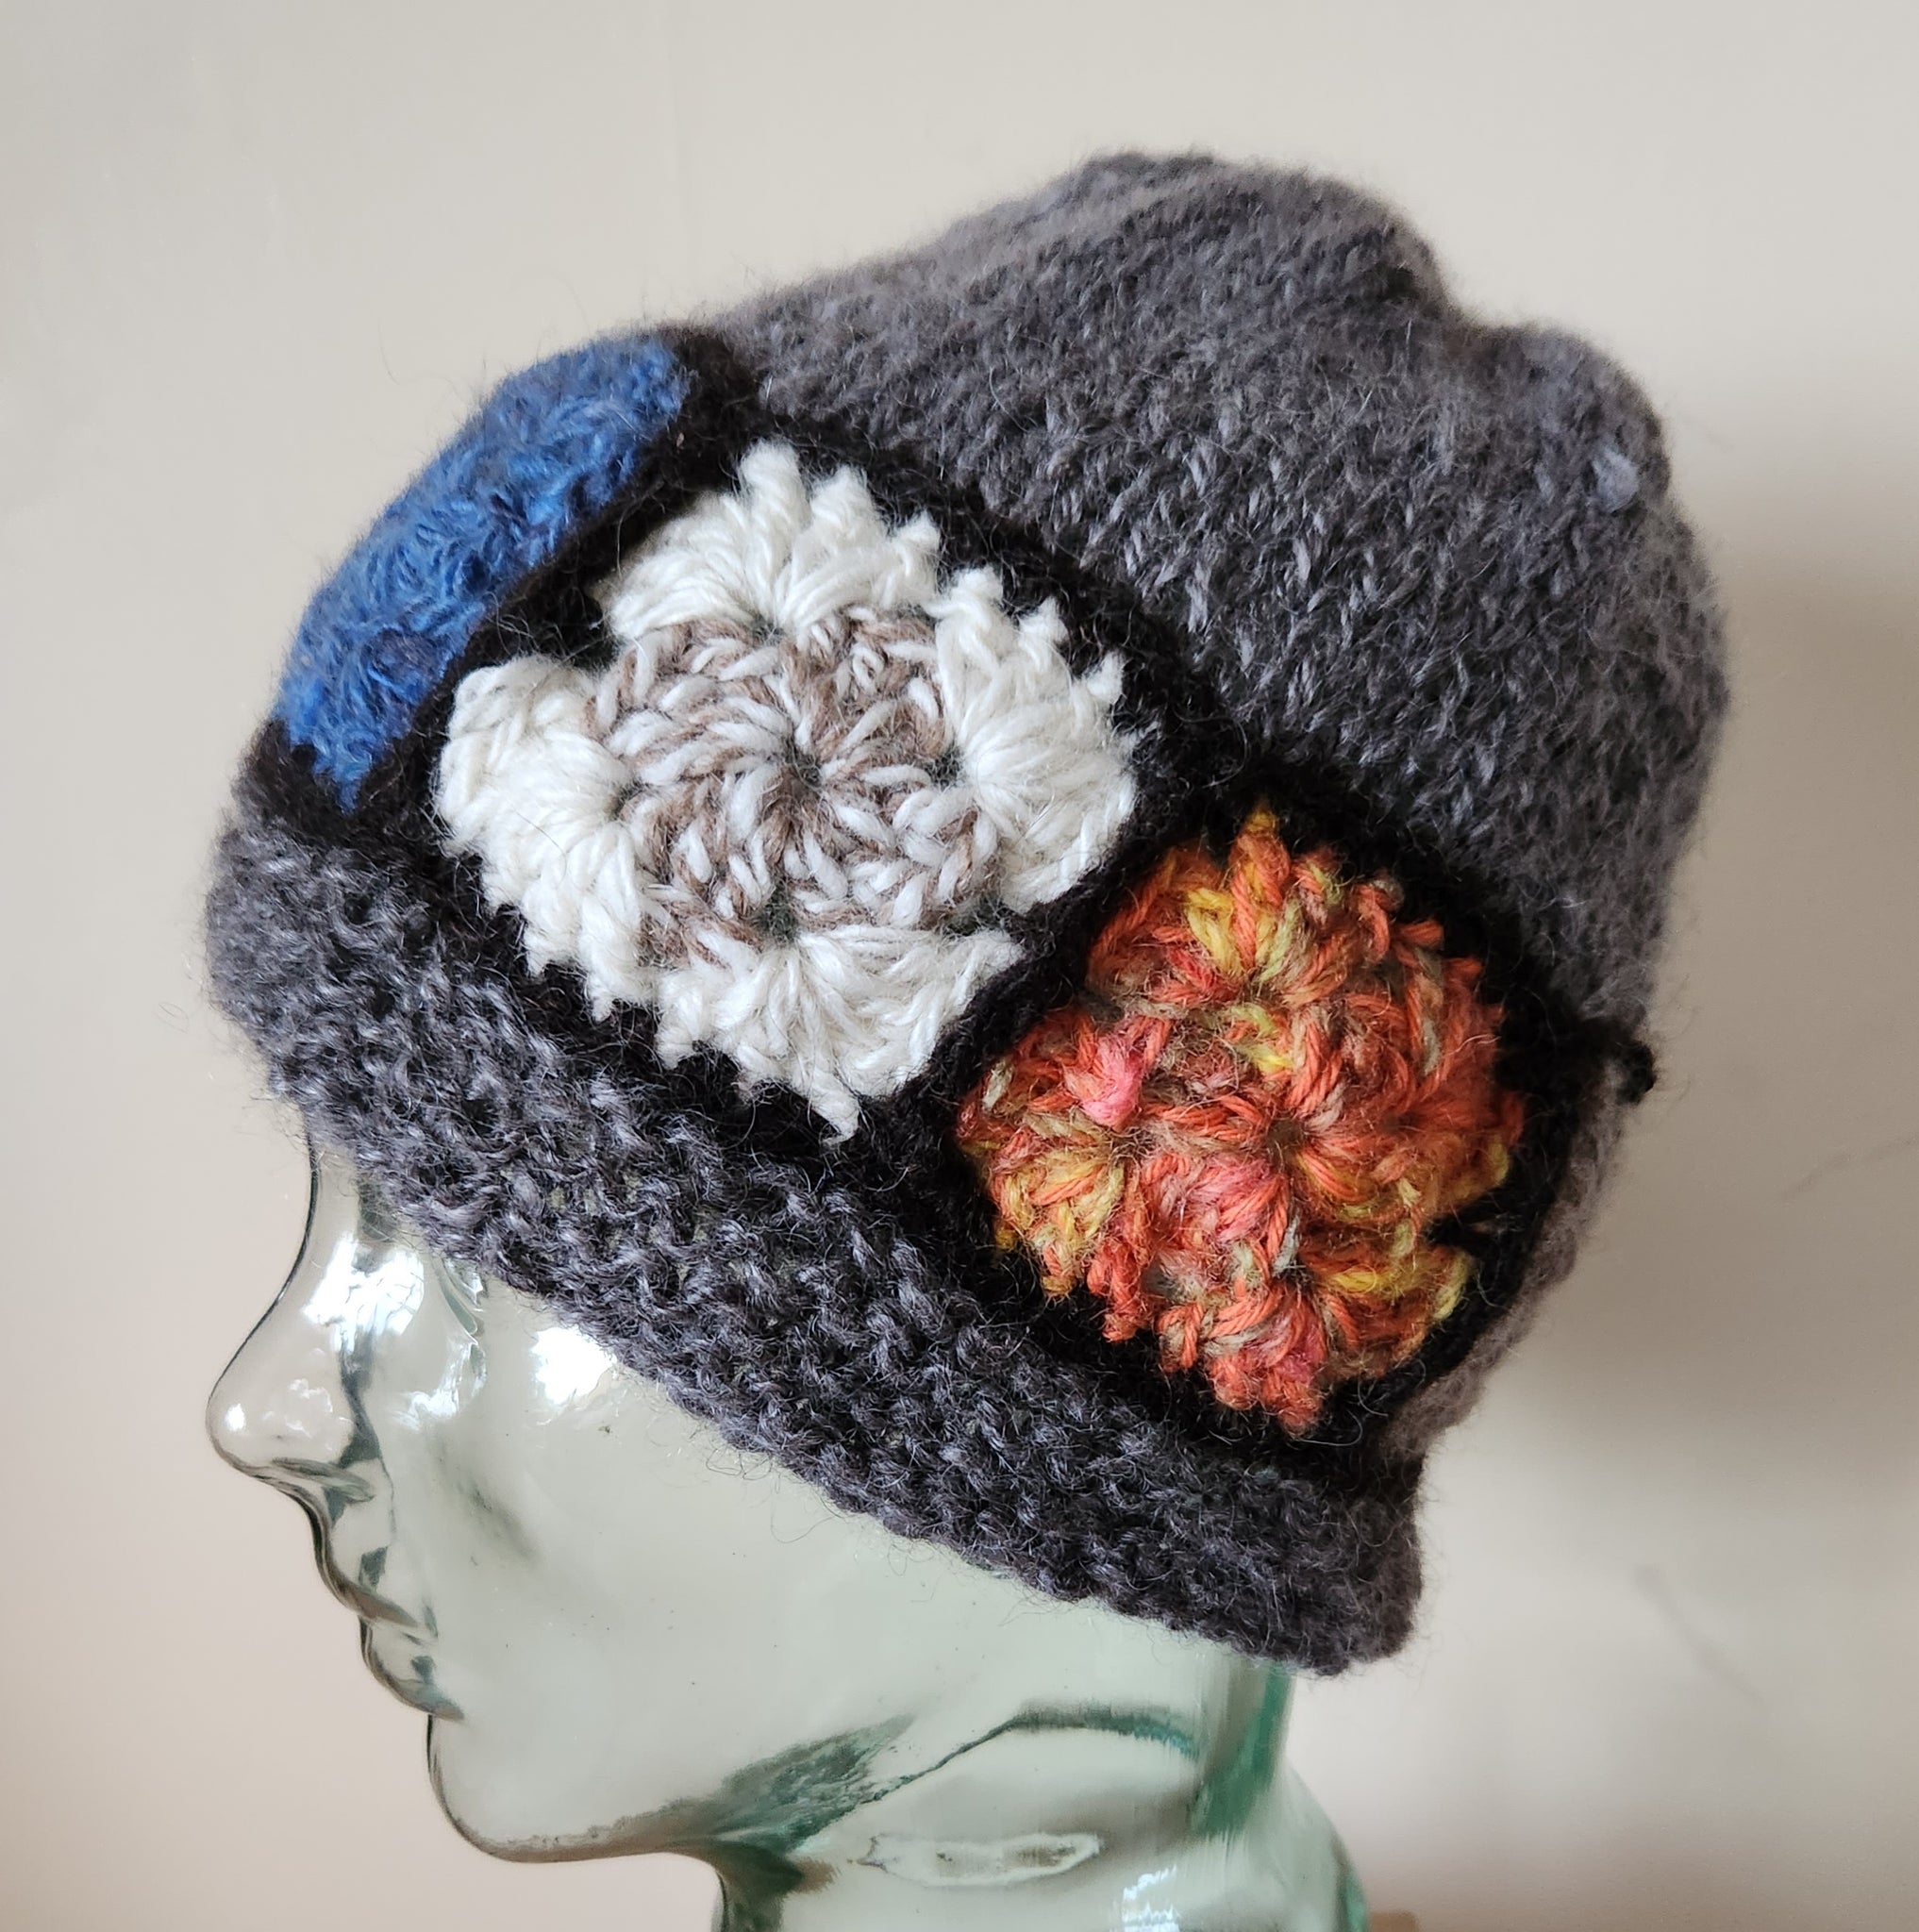 Garter St Band 100% wool handspun Hat with crochet trim .Medium Grey